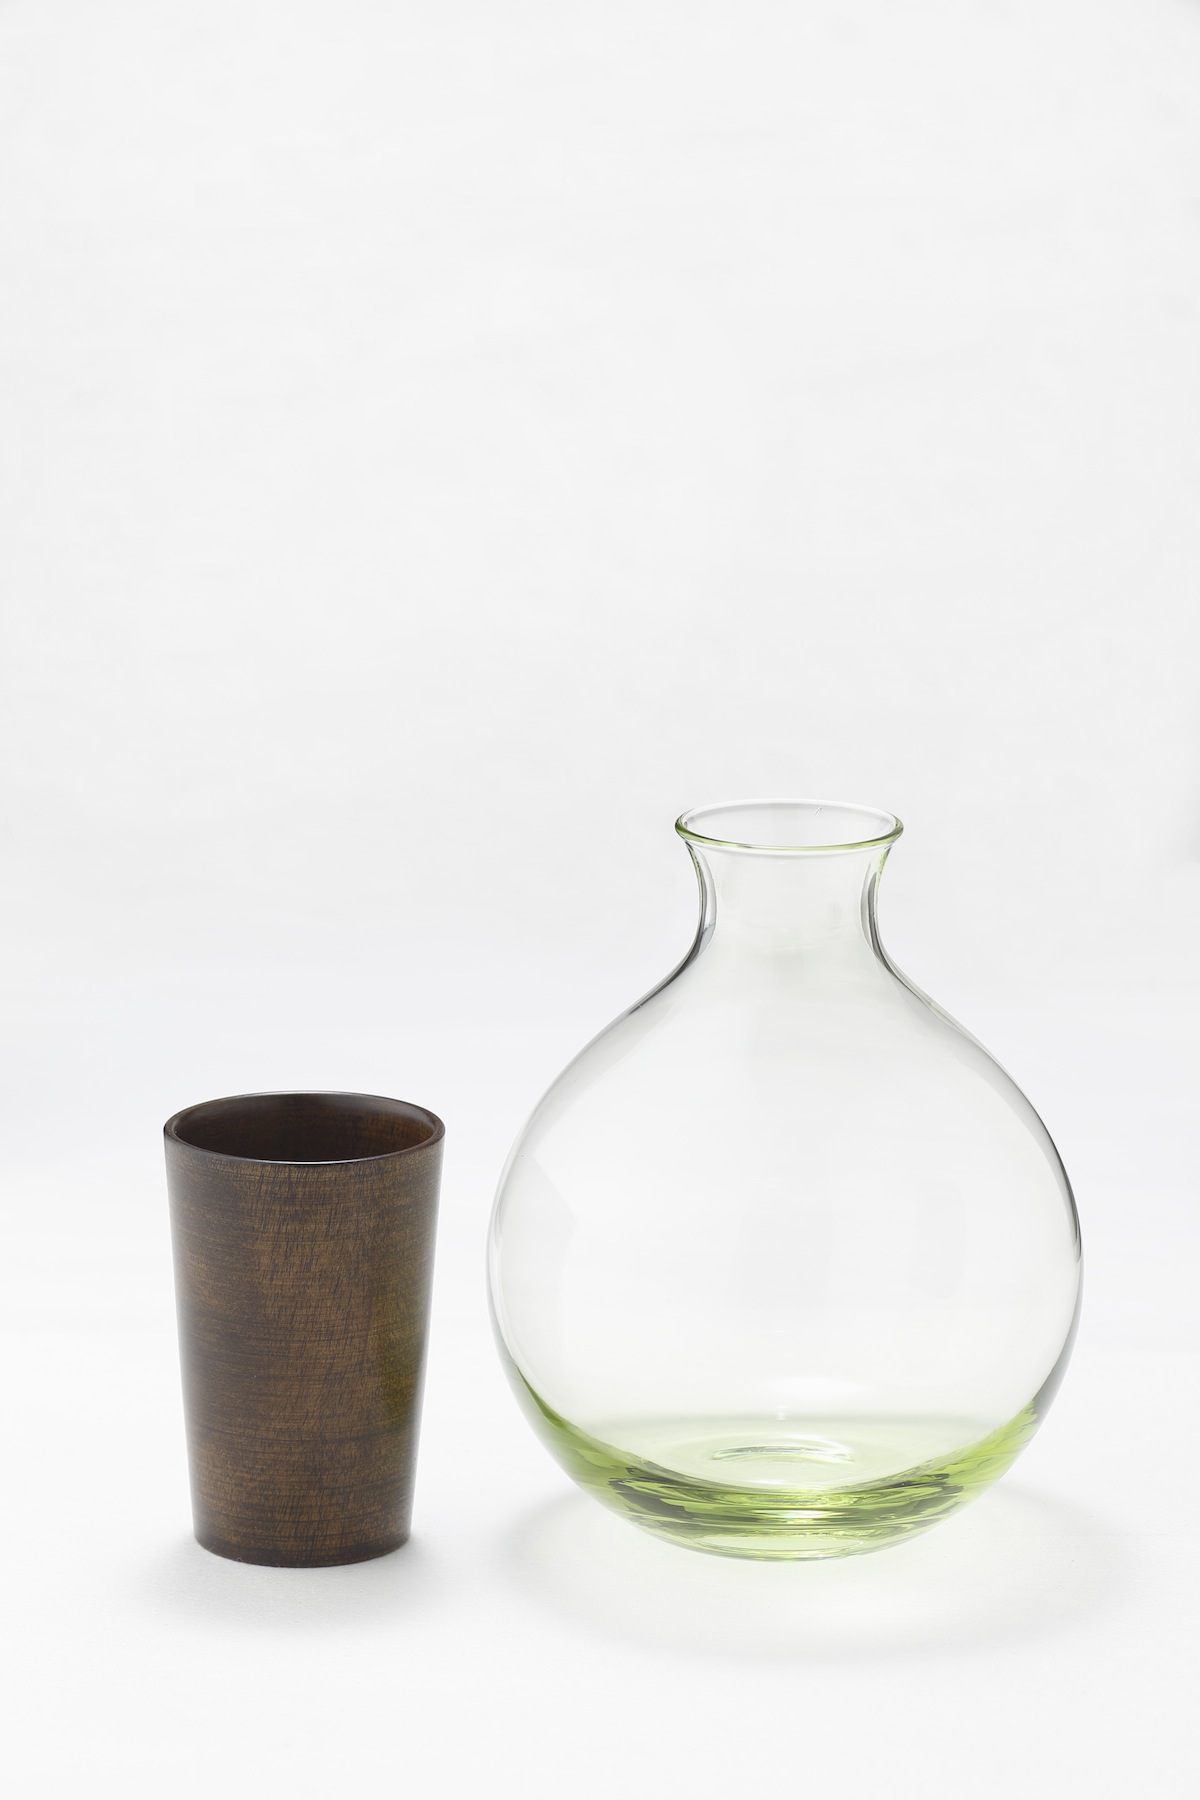 Urushito Glass by Japan Joboji